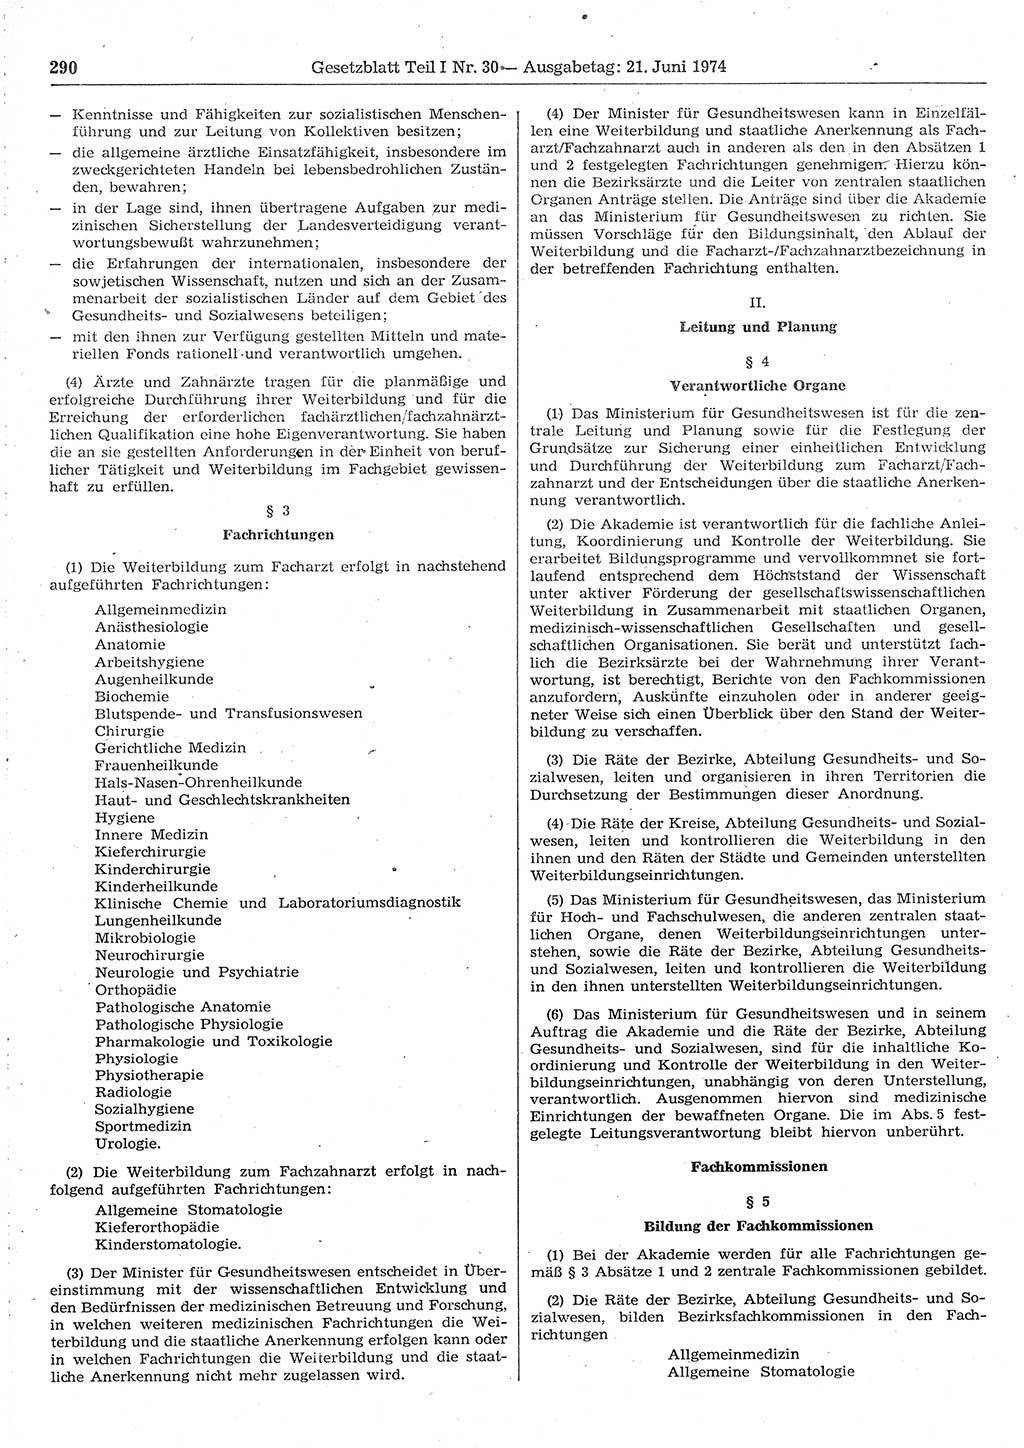 Gesetzblatt (GBl.) der Deutschen Demokratischen Republik (DDR) Teil Ⅰ 1974, Seite 290 (GBl. DDR Ⅰ 1974, S. 290)